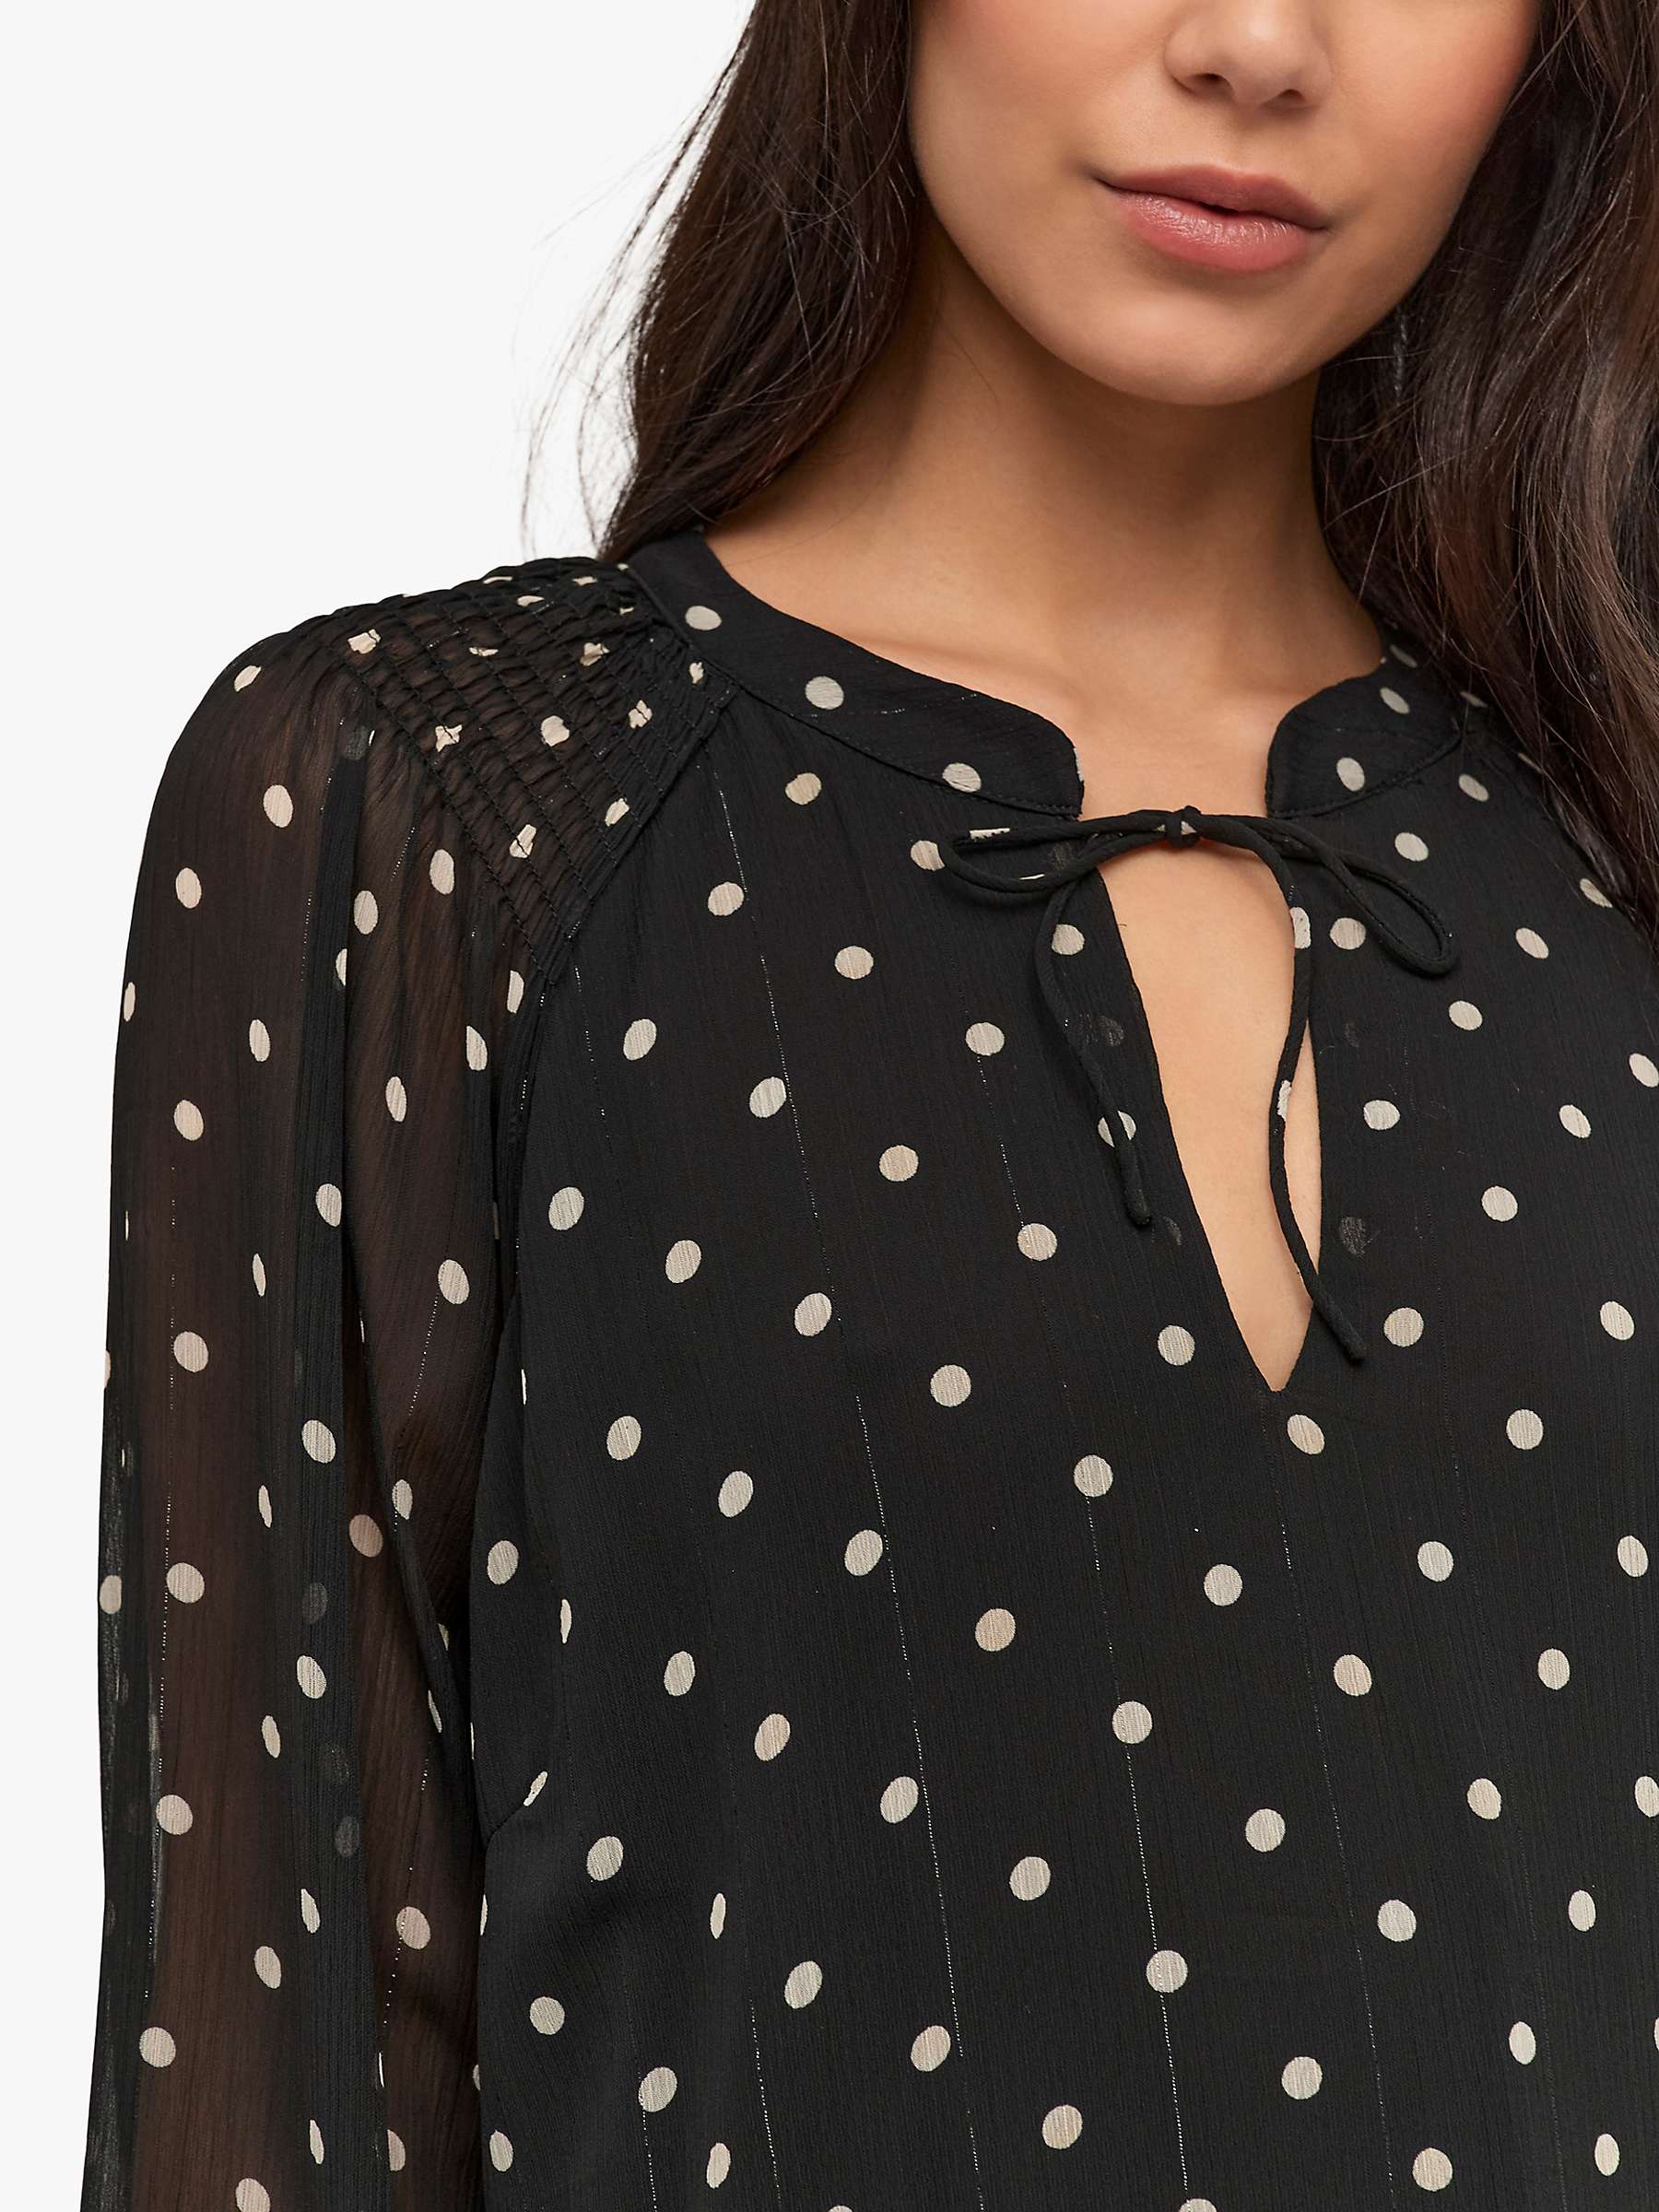 Buy KAFFE Simi A-Line Polka Dot Dress, Black/Sand Online at johnlewis.com